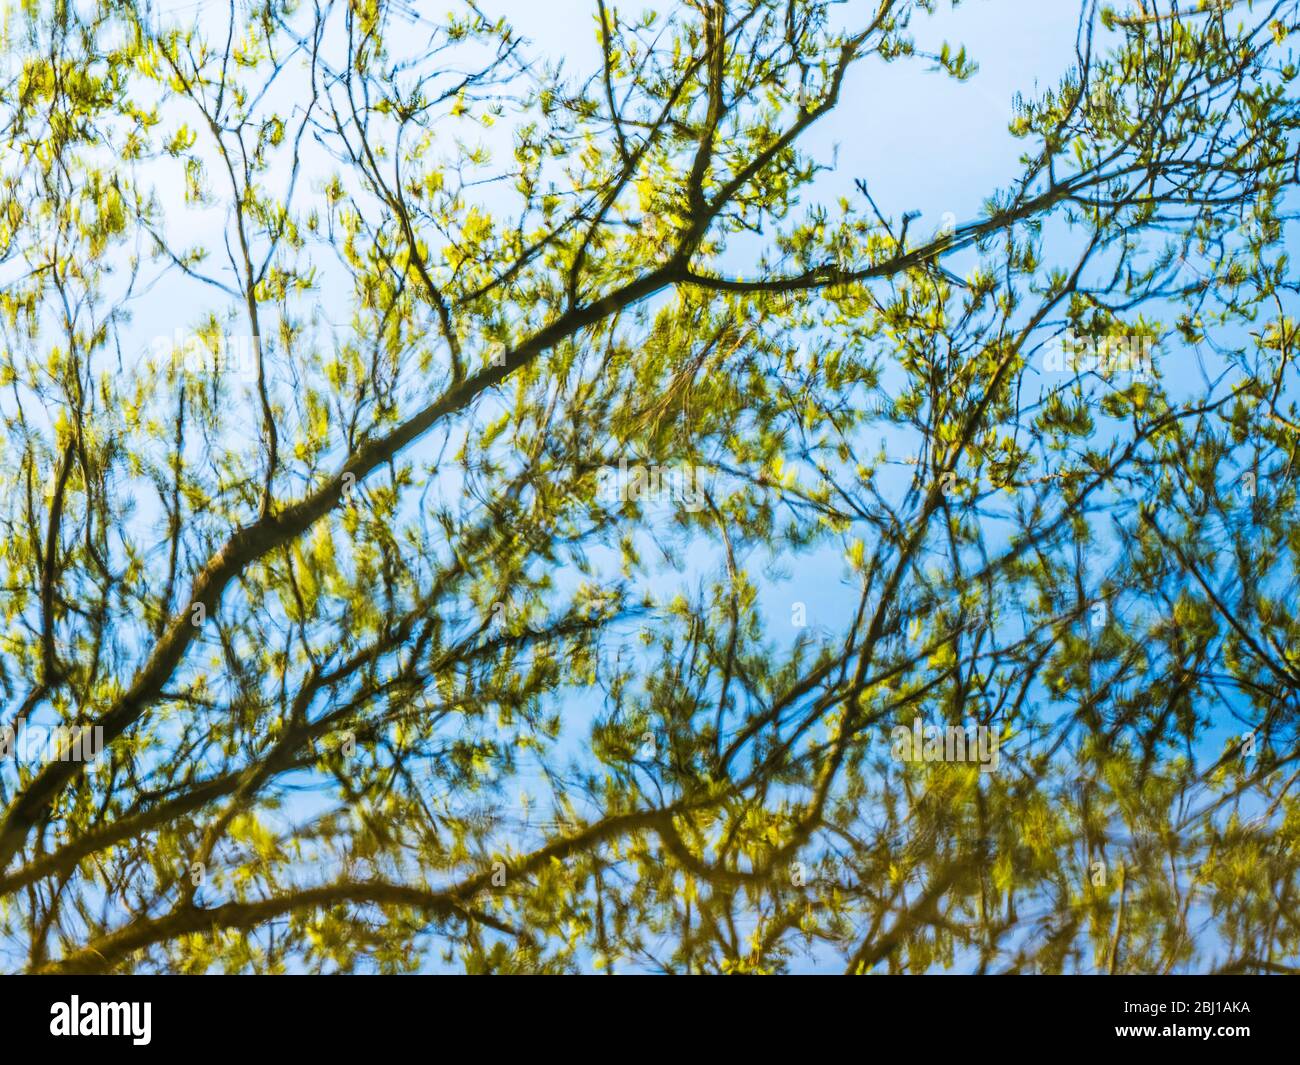 Un'immagine astratta di rami di albero e ramoscelli riflessi nell'acqua ferma di un lago. Foto Stock